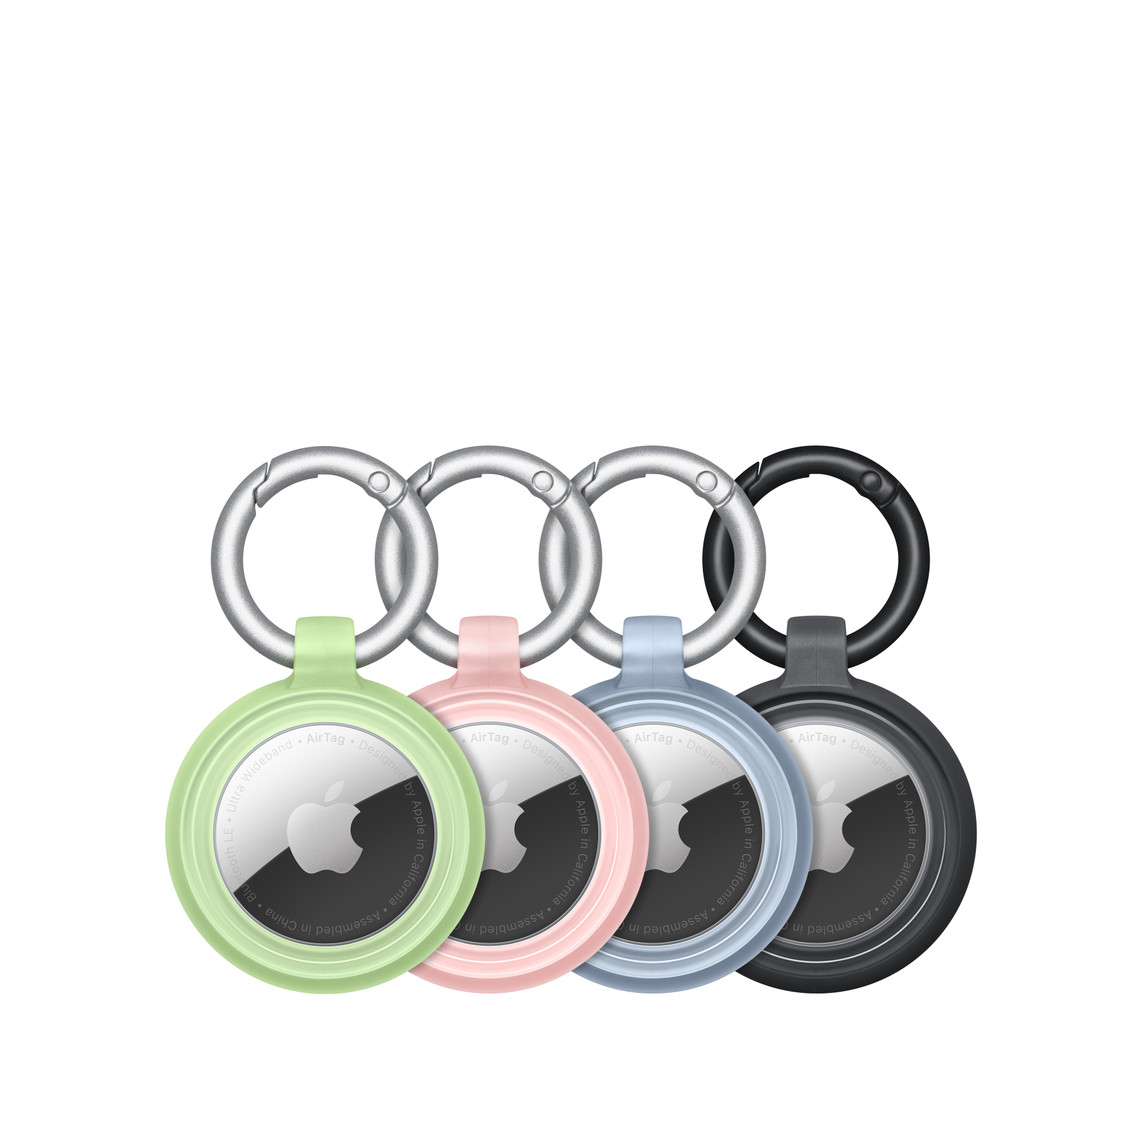 Négy Otterbox Lumen Series tok, bennük egy-egy AirTaggel, jól látszik az Apple-logó